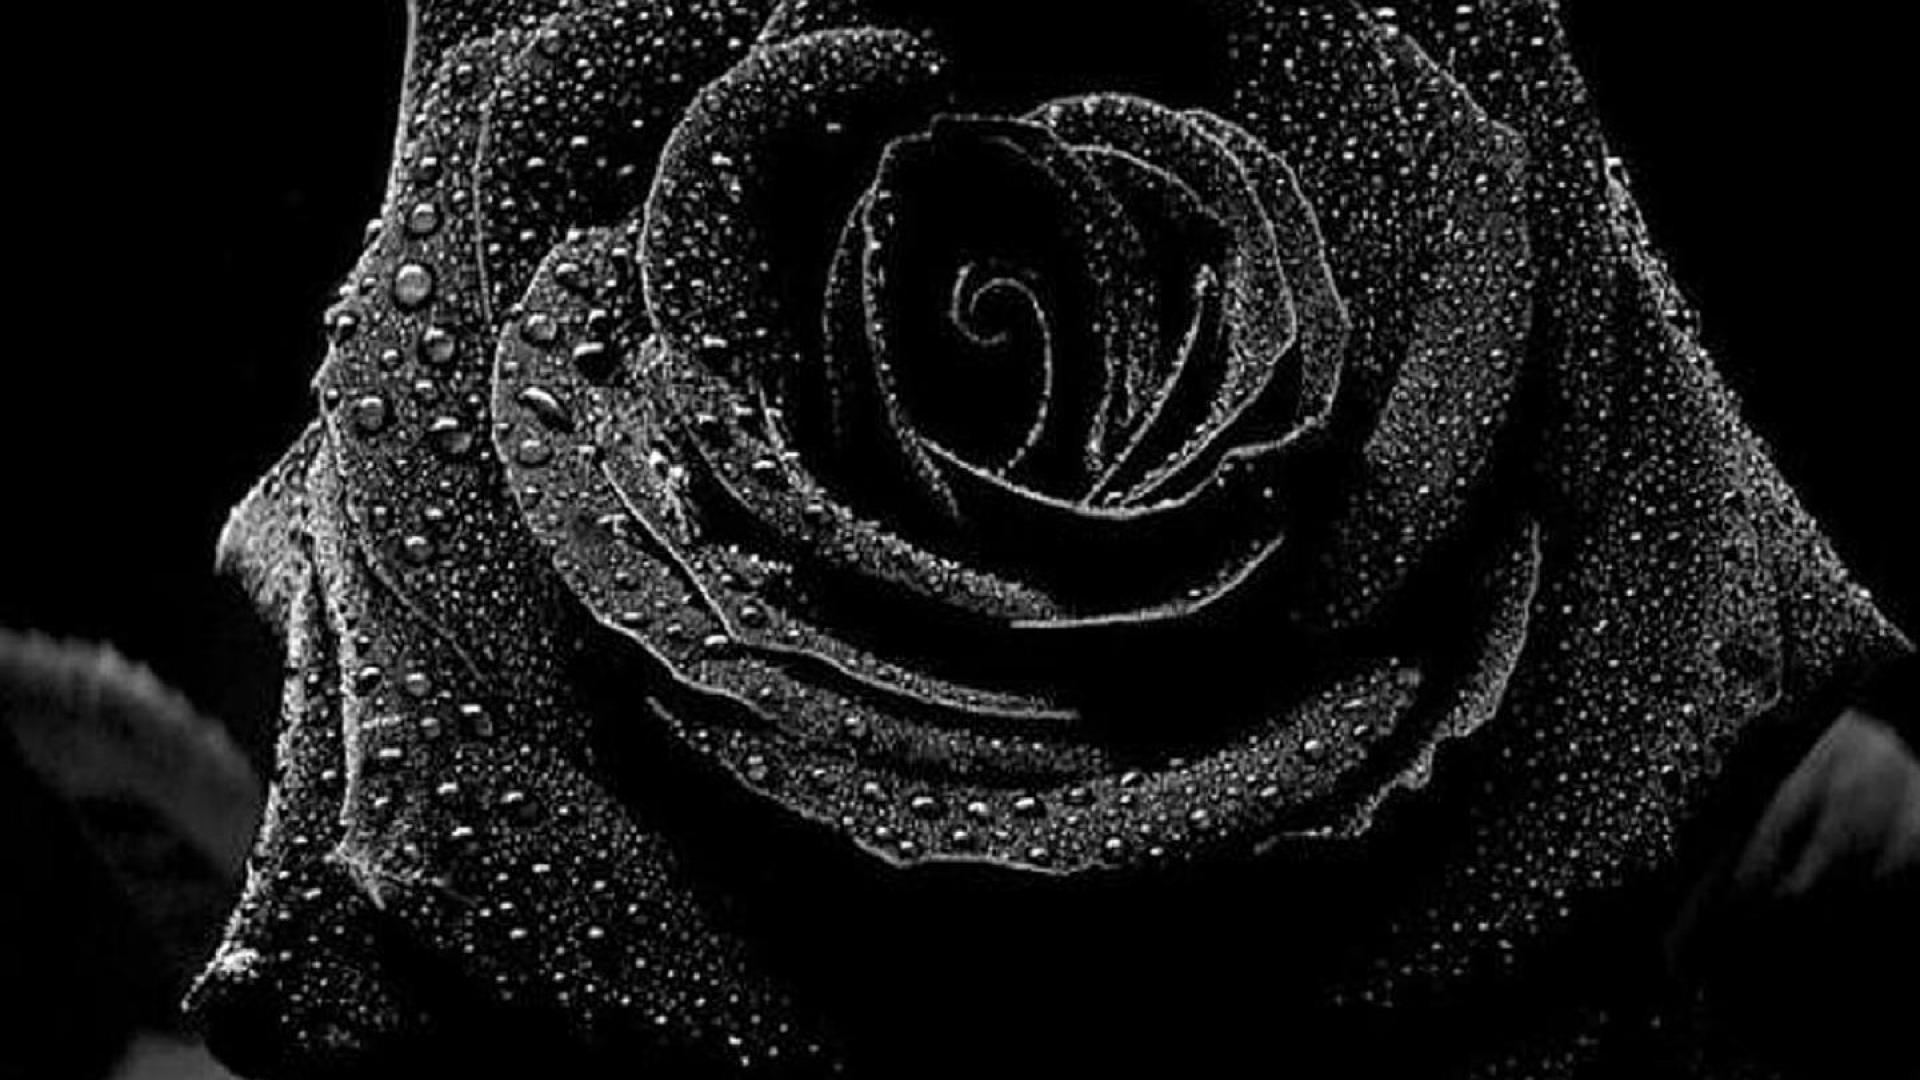 Black Rose Wallpaper HD